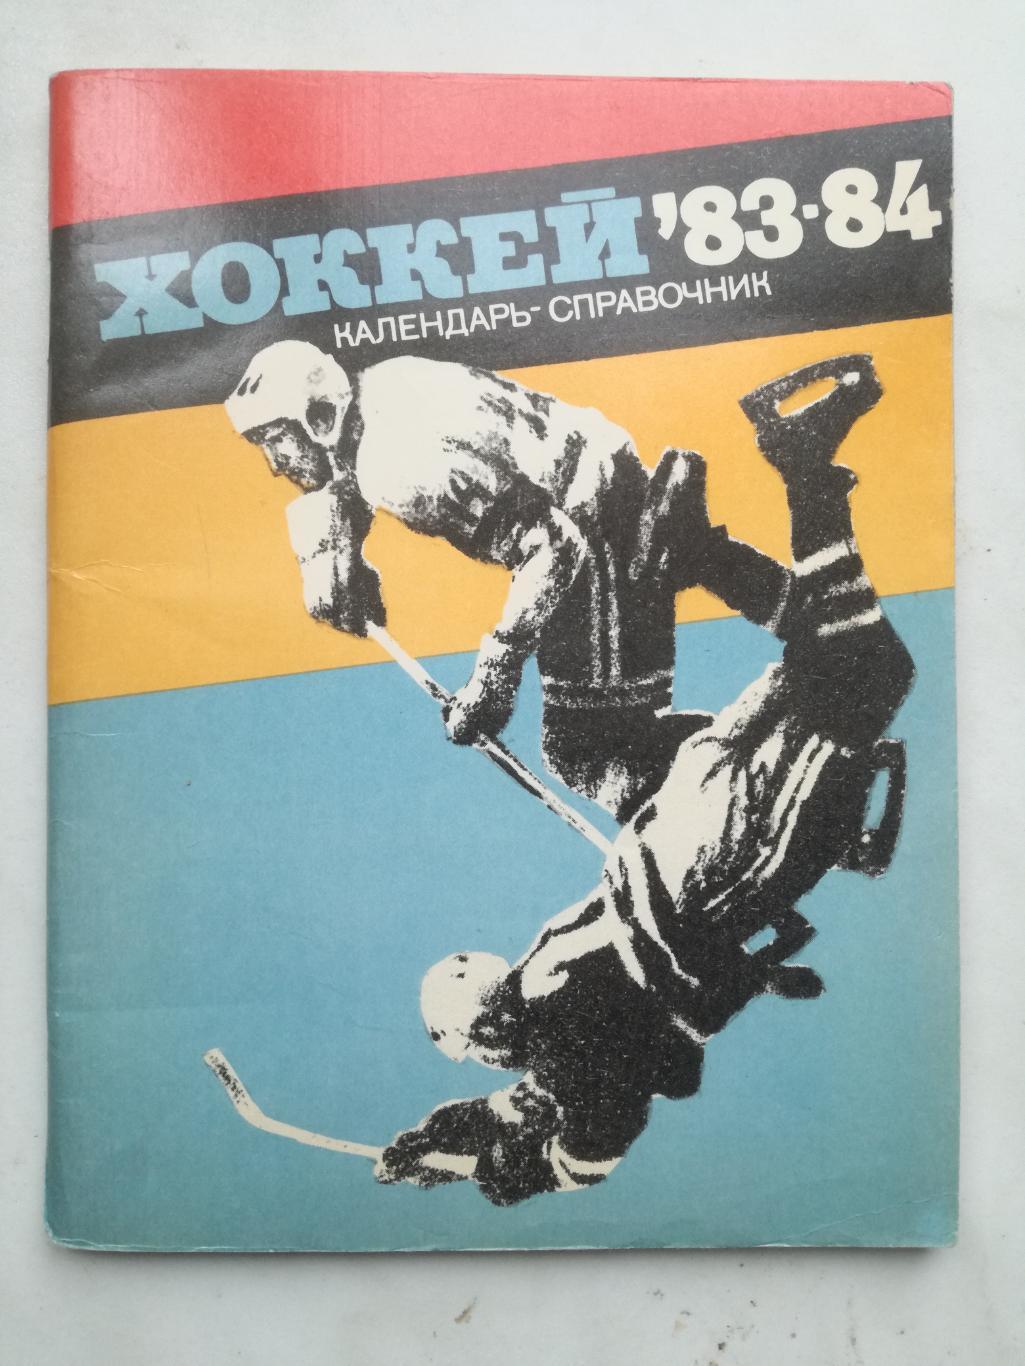 Хоккей. Календарь-справочник. Ленинград, 1983/1984 (83/84)